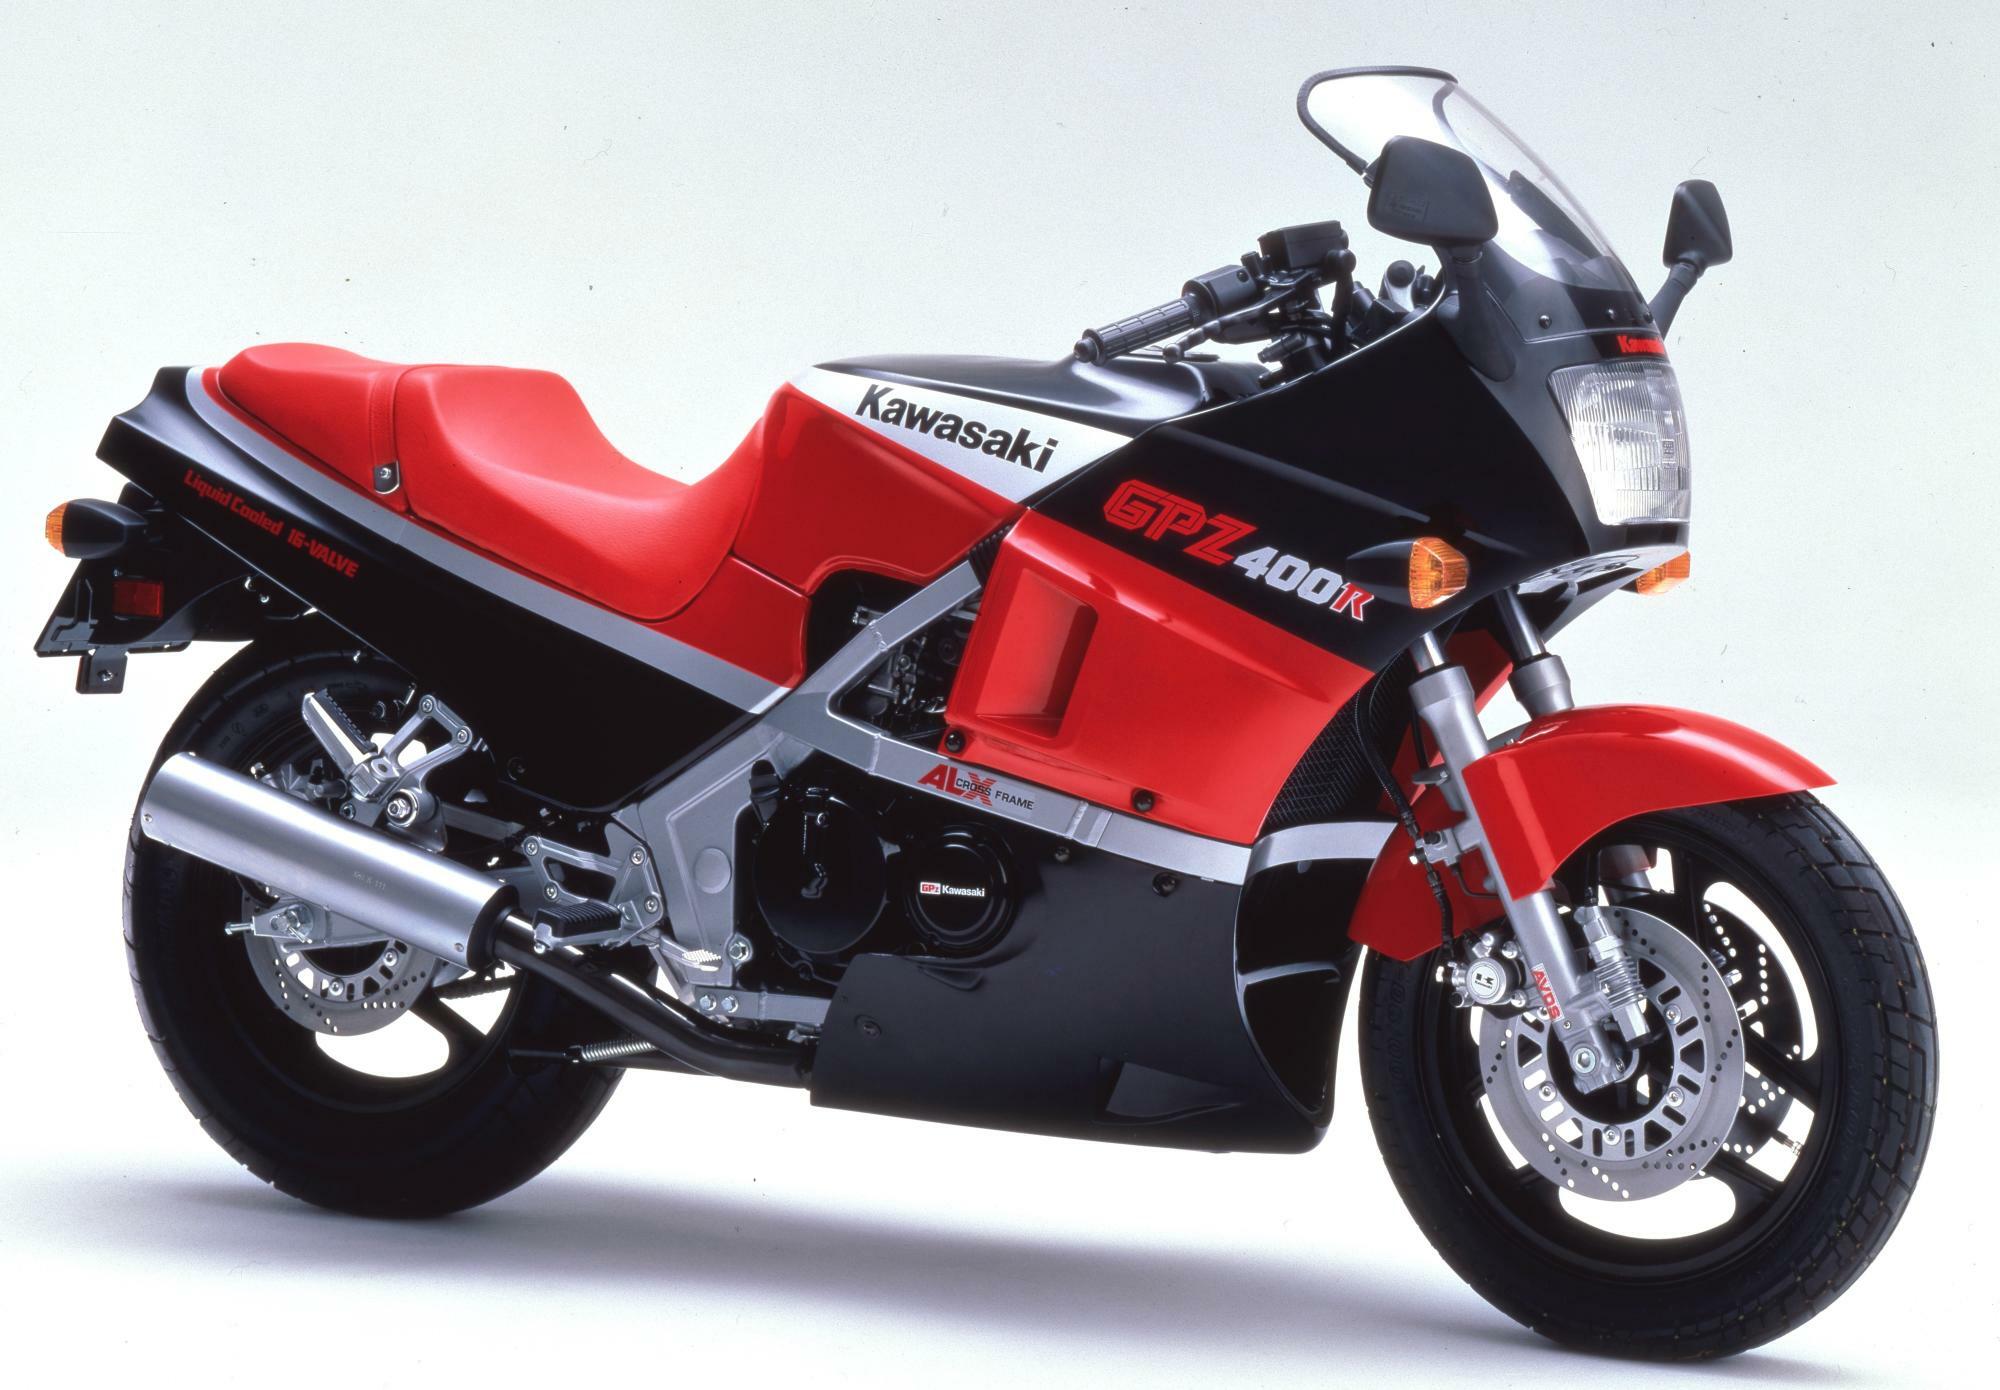 ▲GPZ400R。カワサキは公道主体のバイク作りを貫徹していた〈1985／画像引用元：川崎重工〉